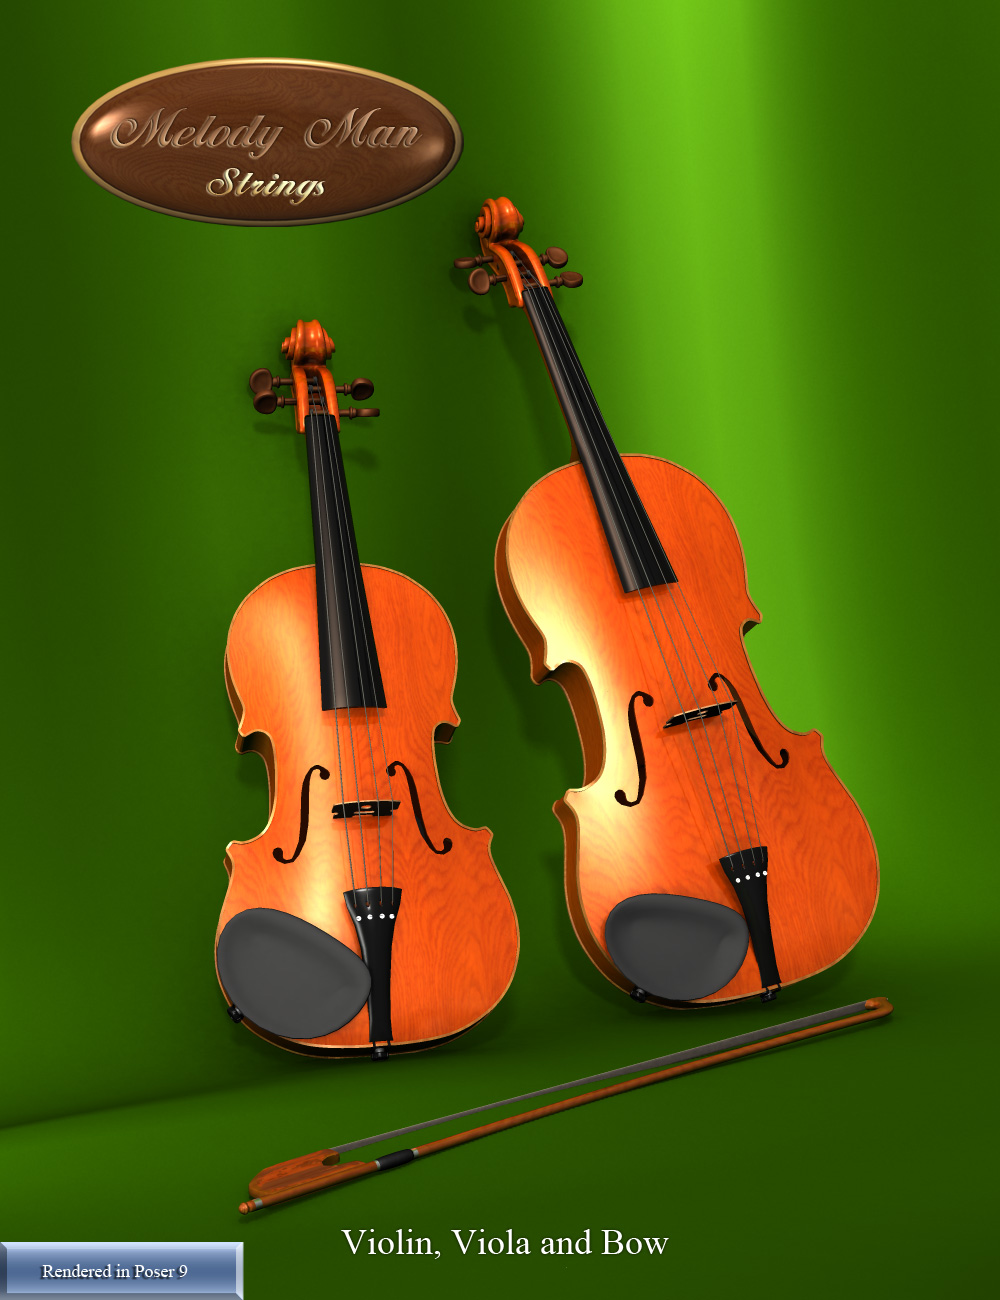 Melody Man Strings by: Don AlbertSimon3D, 3D Models by Daz 3D